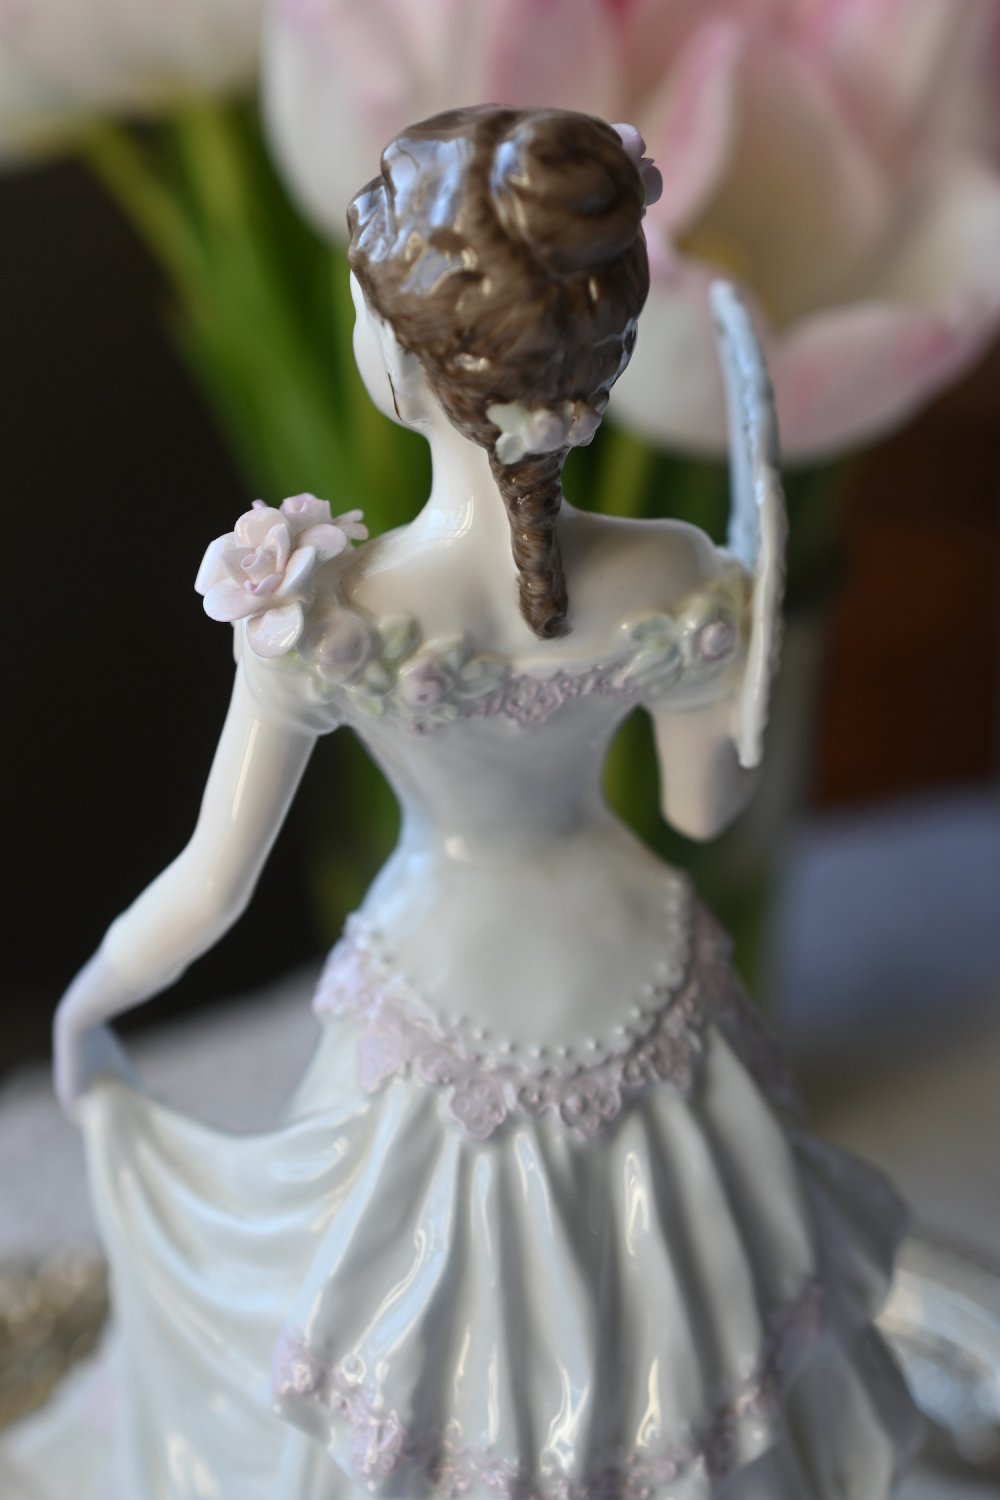 サイズ高さ22㎝最大幅20㎝【希少】コールポート セピア色の貴婦人 エレガンス秋の散策  フィギリン人形